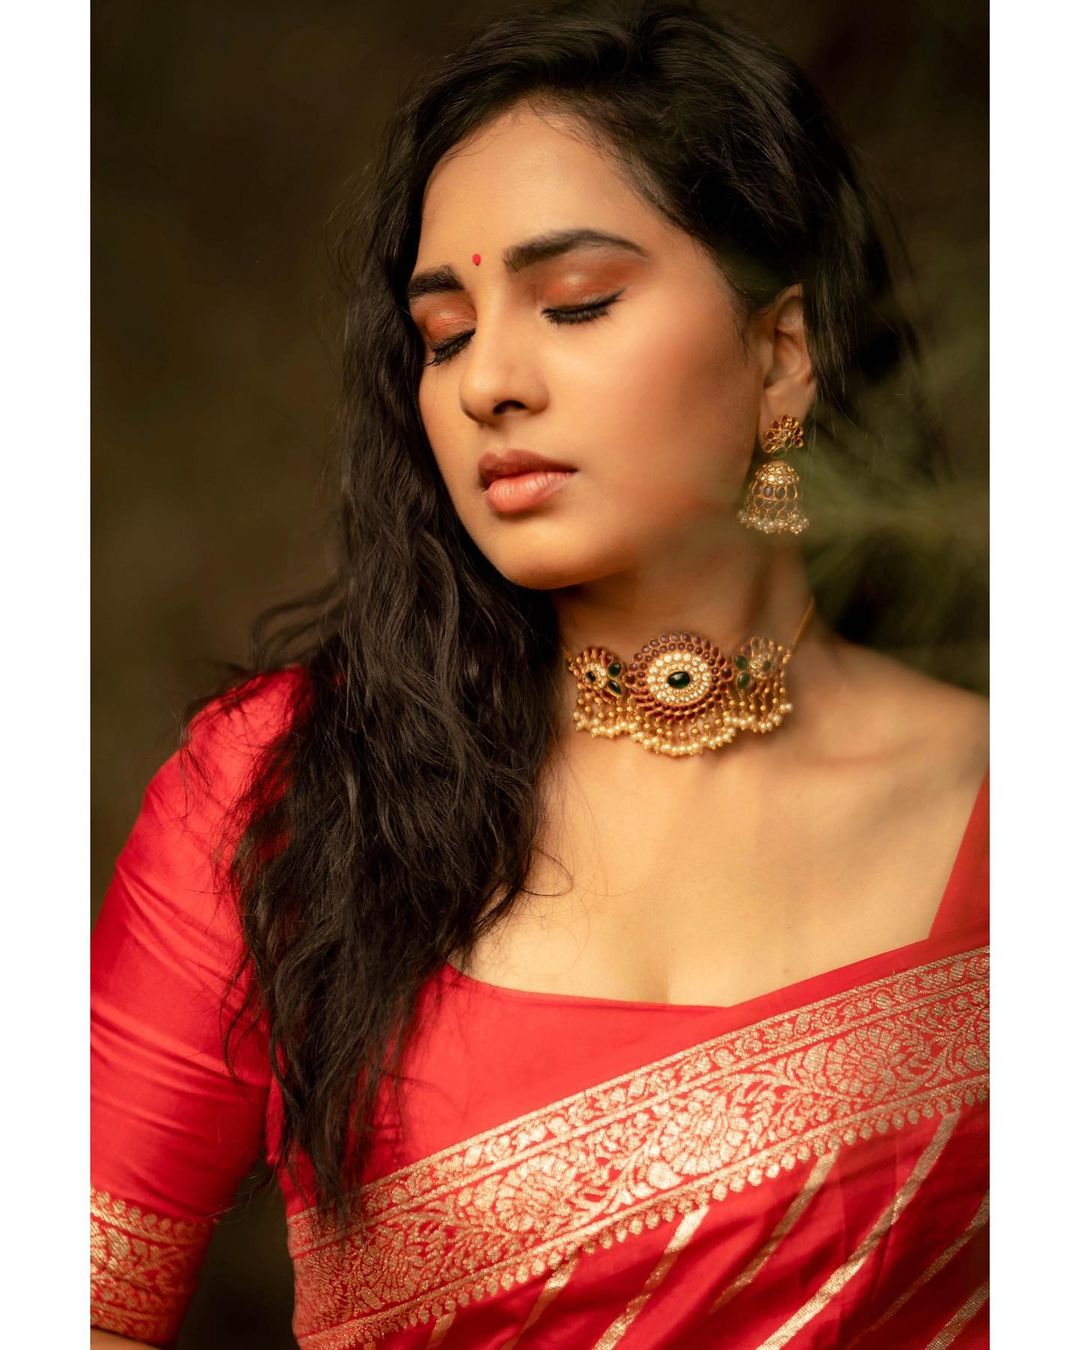 Actress Srushti dange in red saree stylish photoshoot